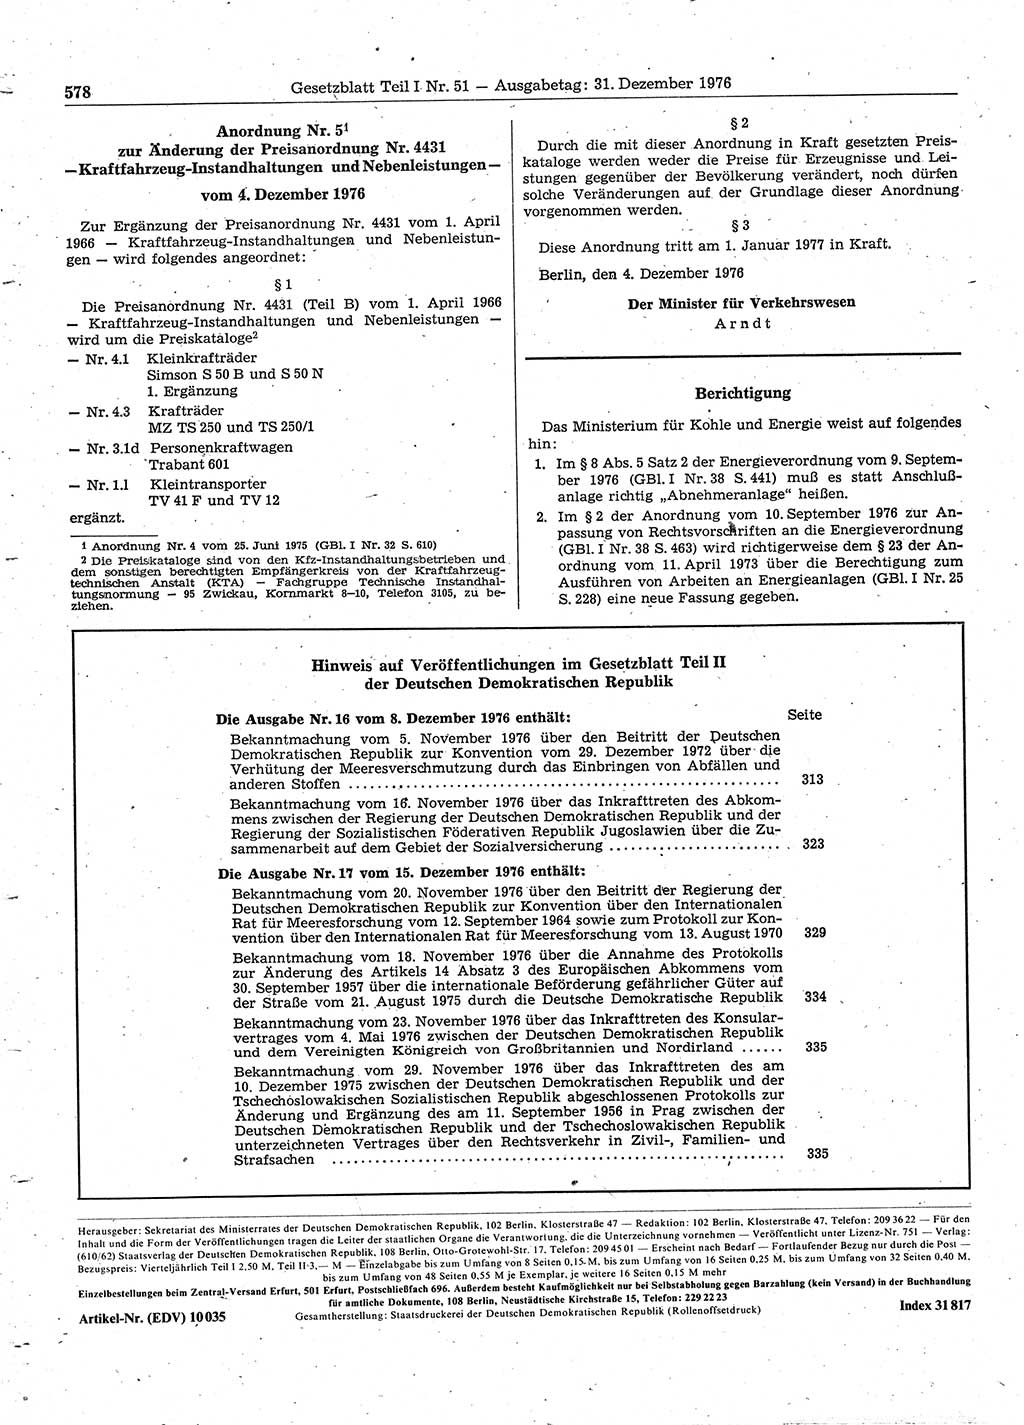 Gesetzblatt (GBl.) der Deutschen Demokratischen Republik (DDR) Teil Ⅰ 1976, Seite 578 (GBl. DDR Ⅰ 1976, S. 578)